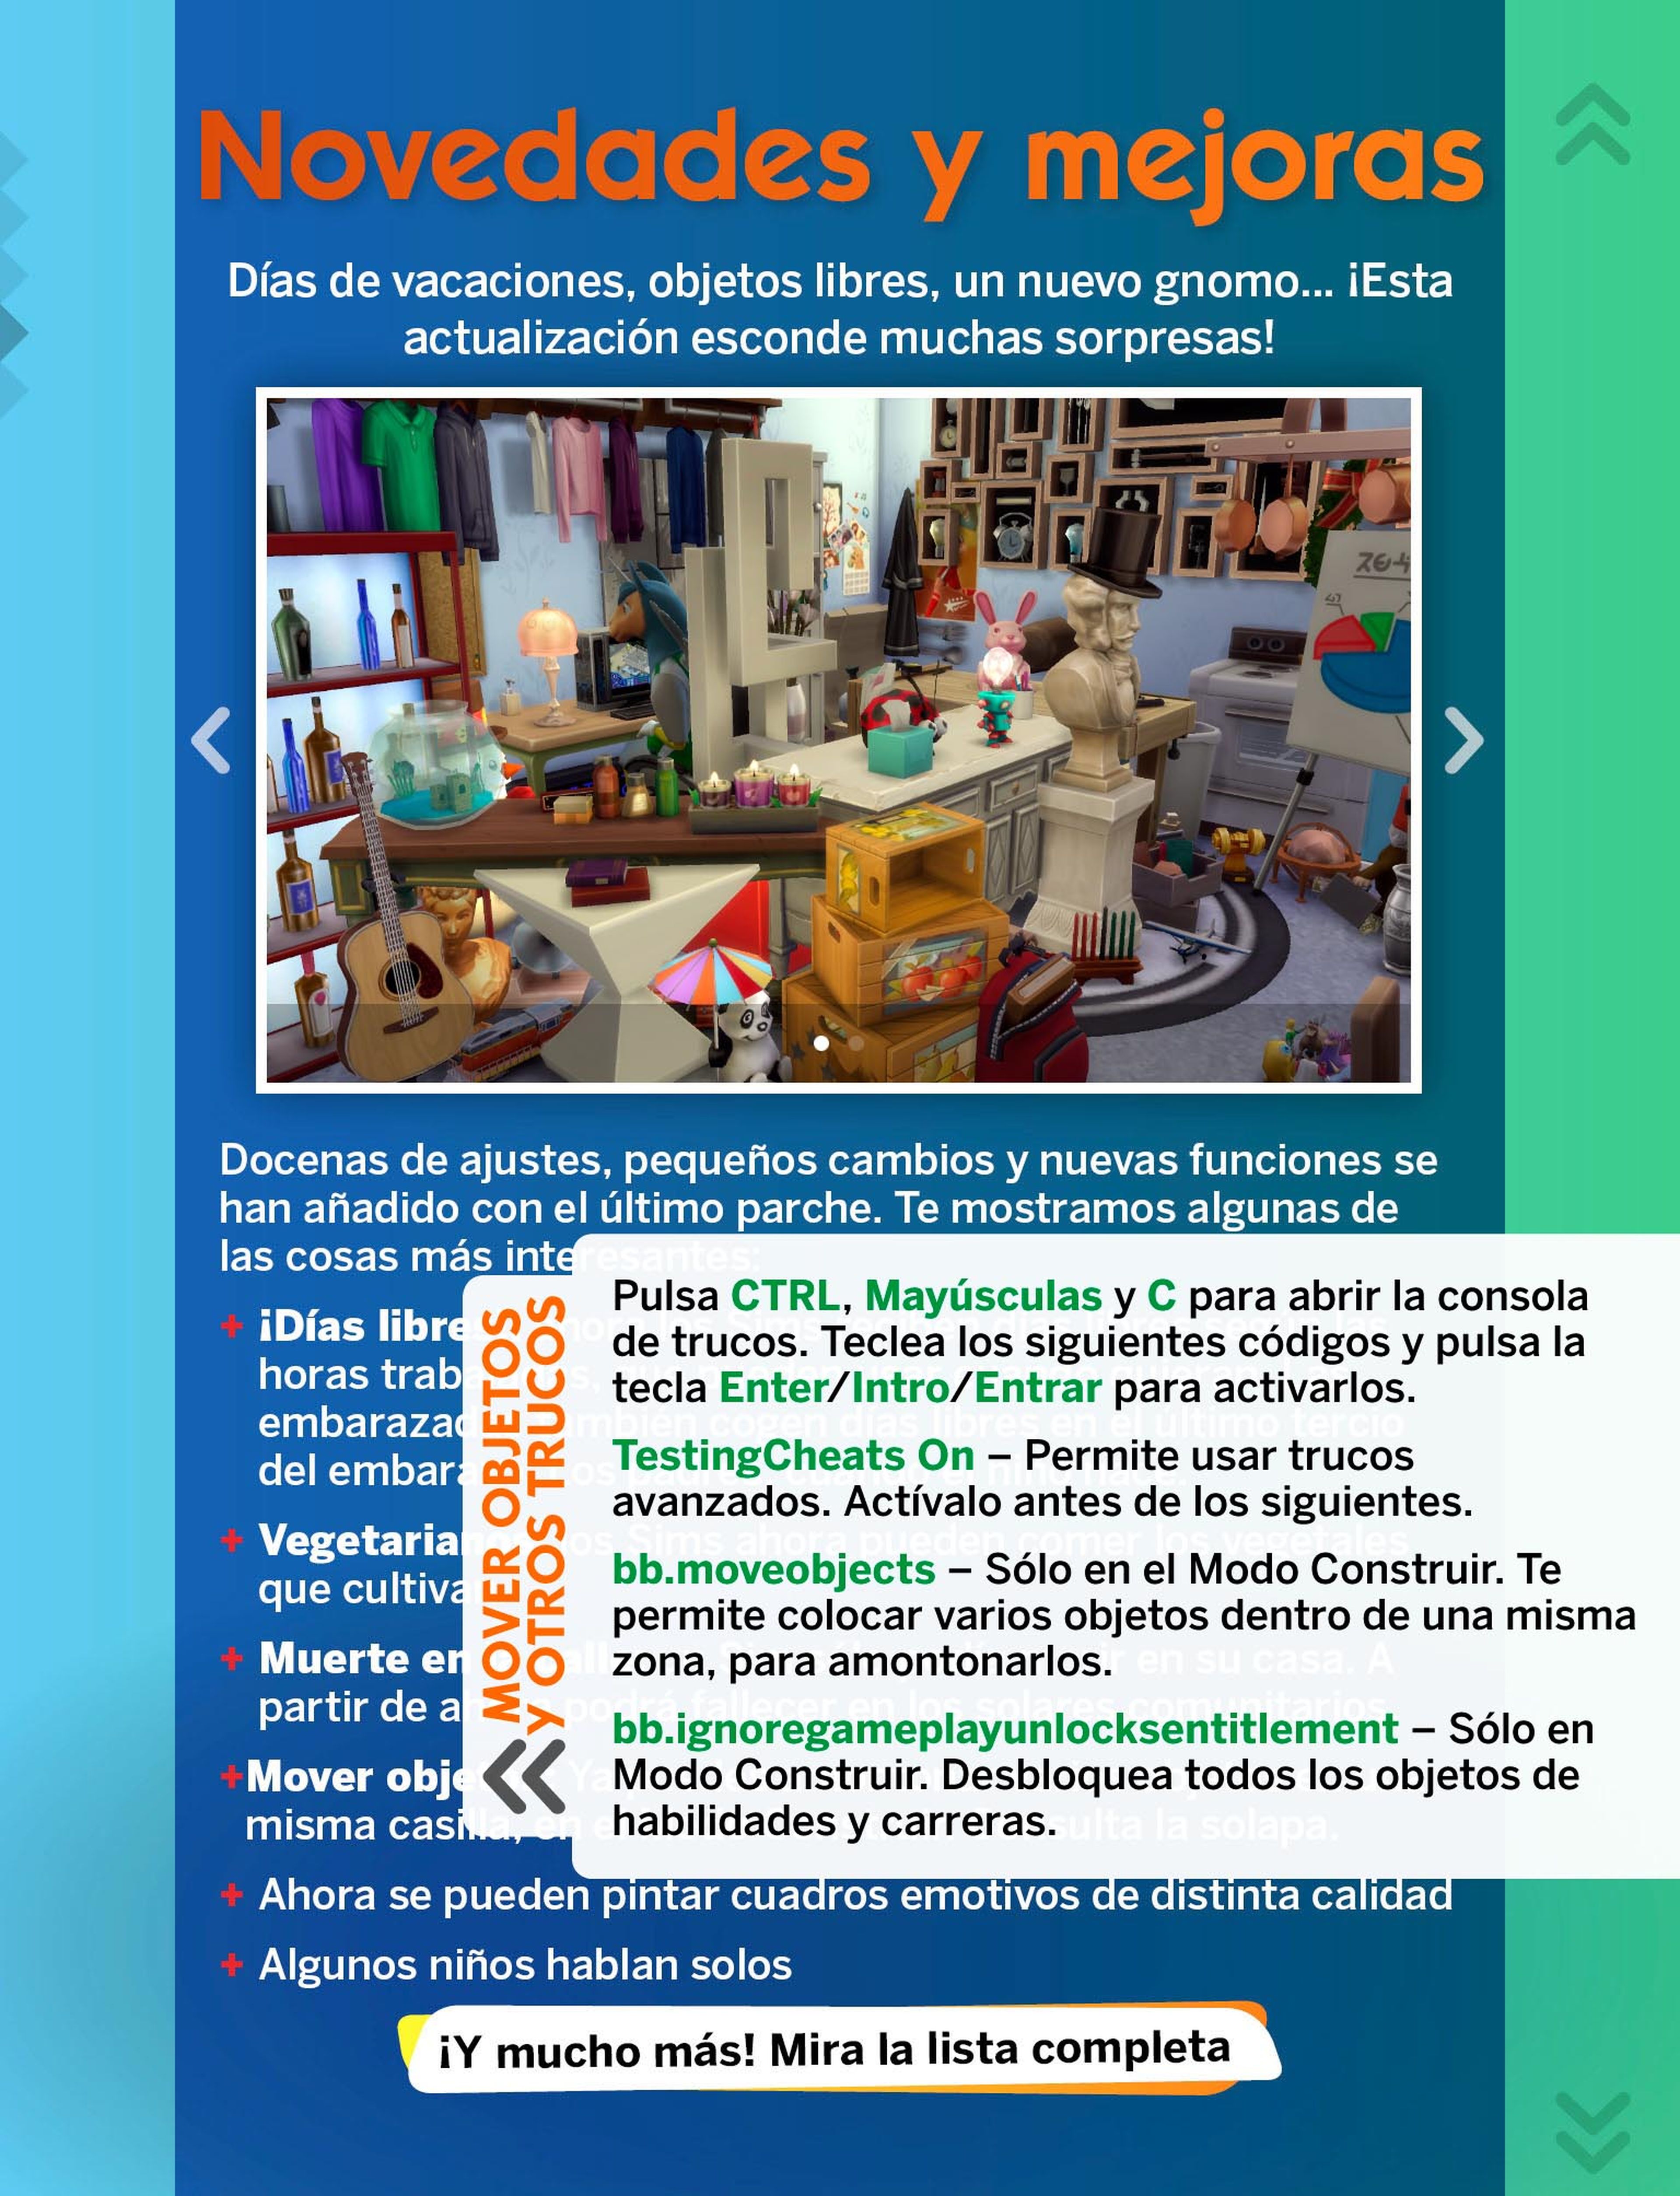 ¡Ya puedes descargar gratis el número 9 de La Revista Oficial de Los Sims!